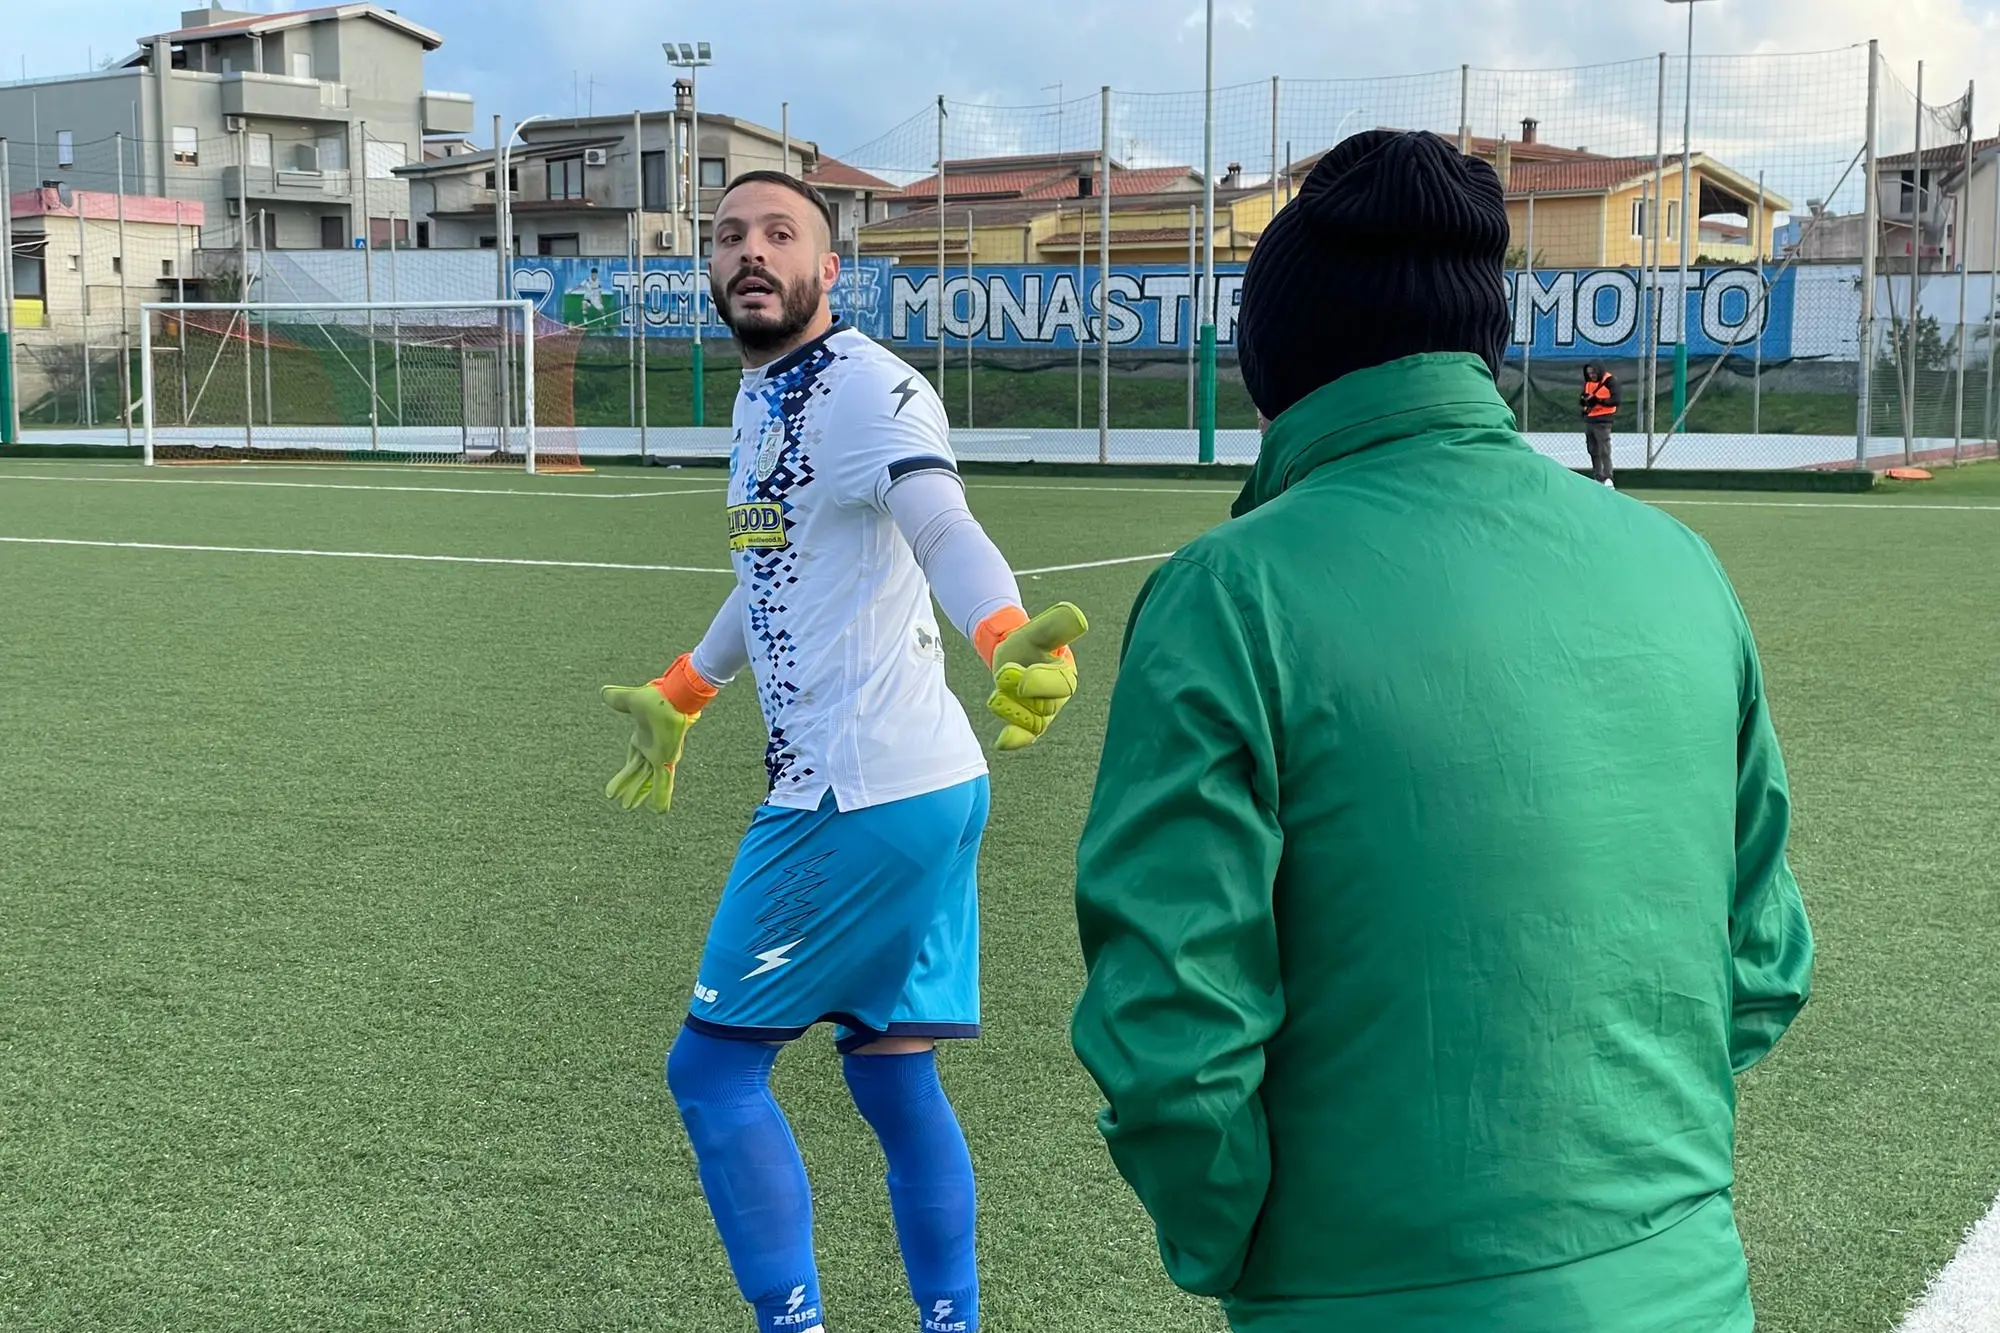 Enrico Galasso, da due mesi portiere del Monastir, parla con l'allenatore Tonio Madau (foto Spignesi)